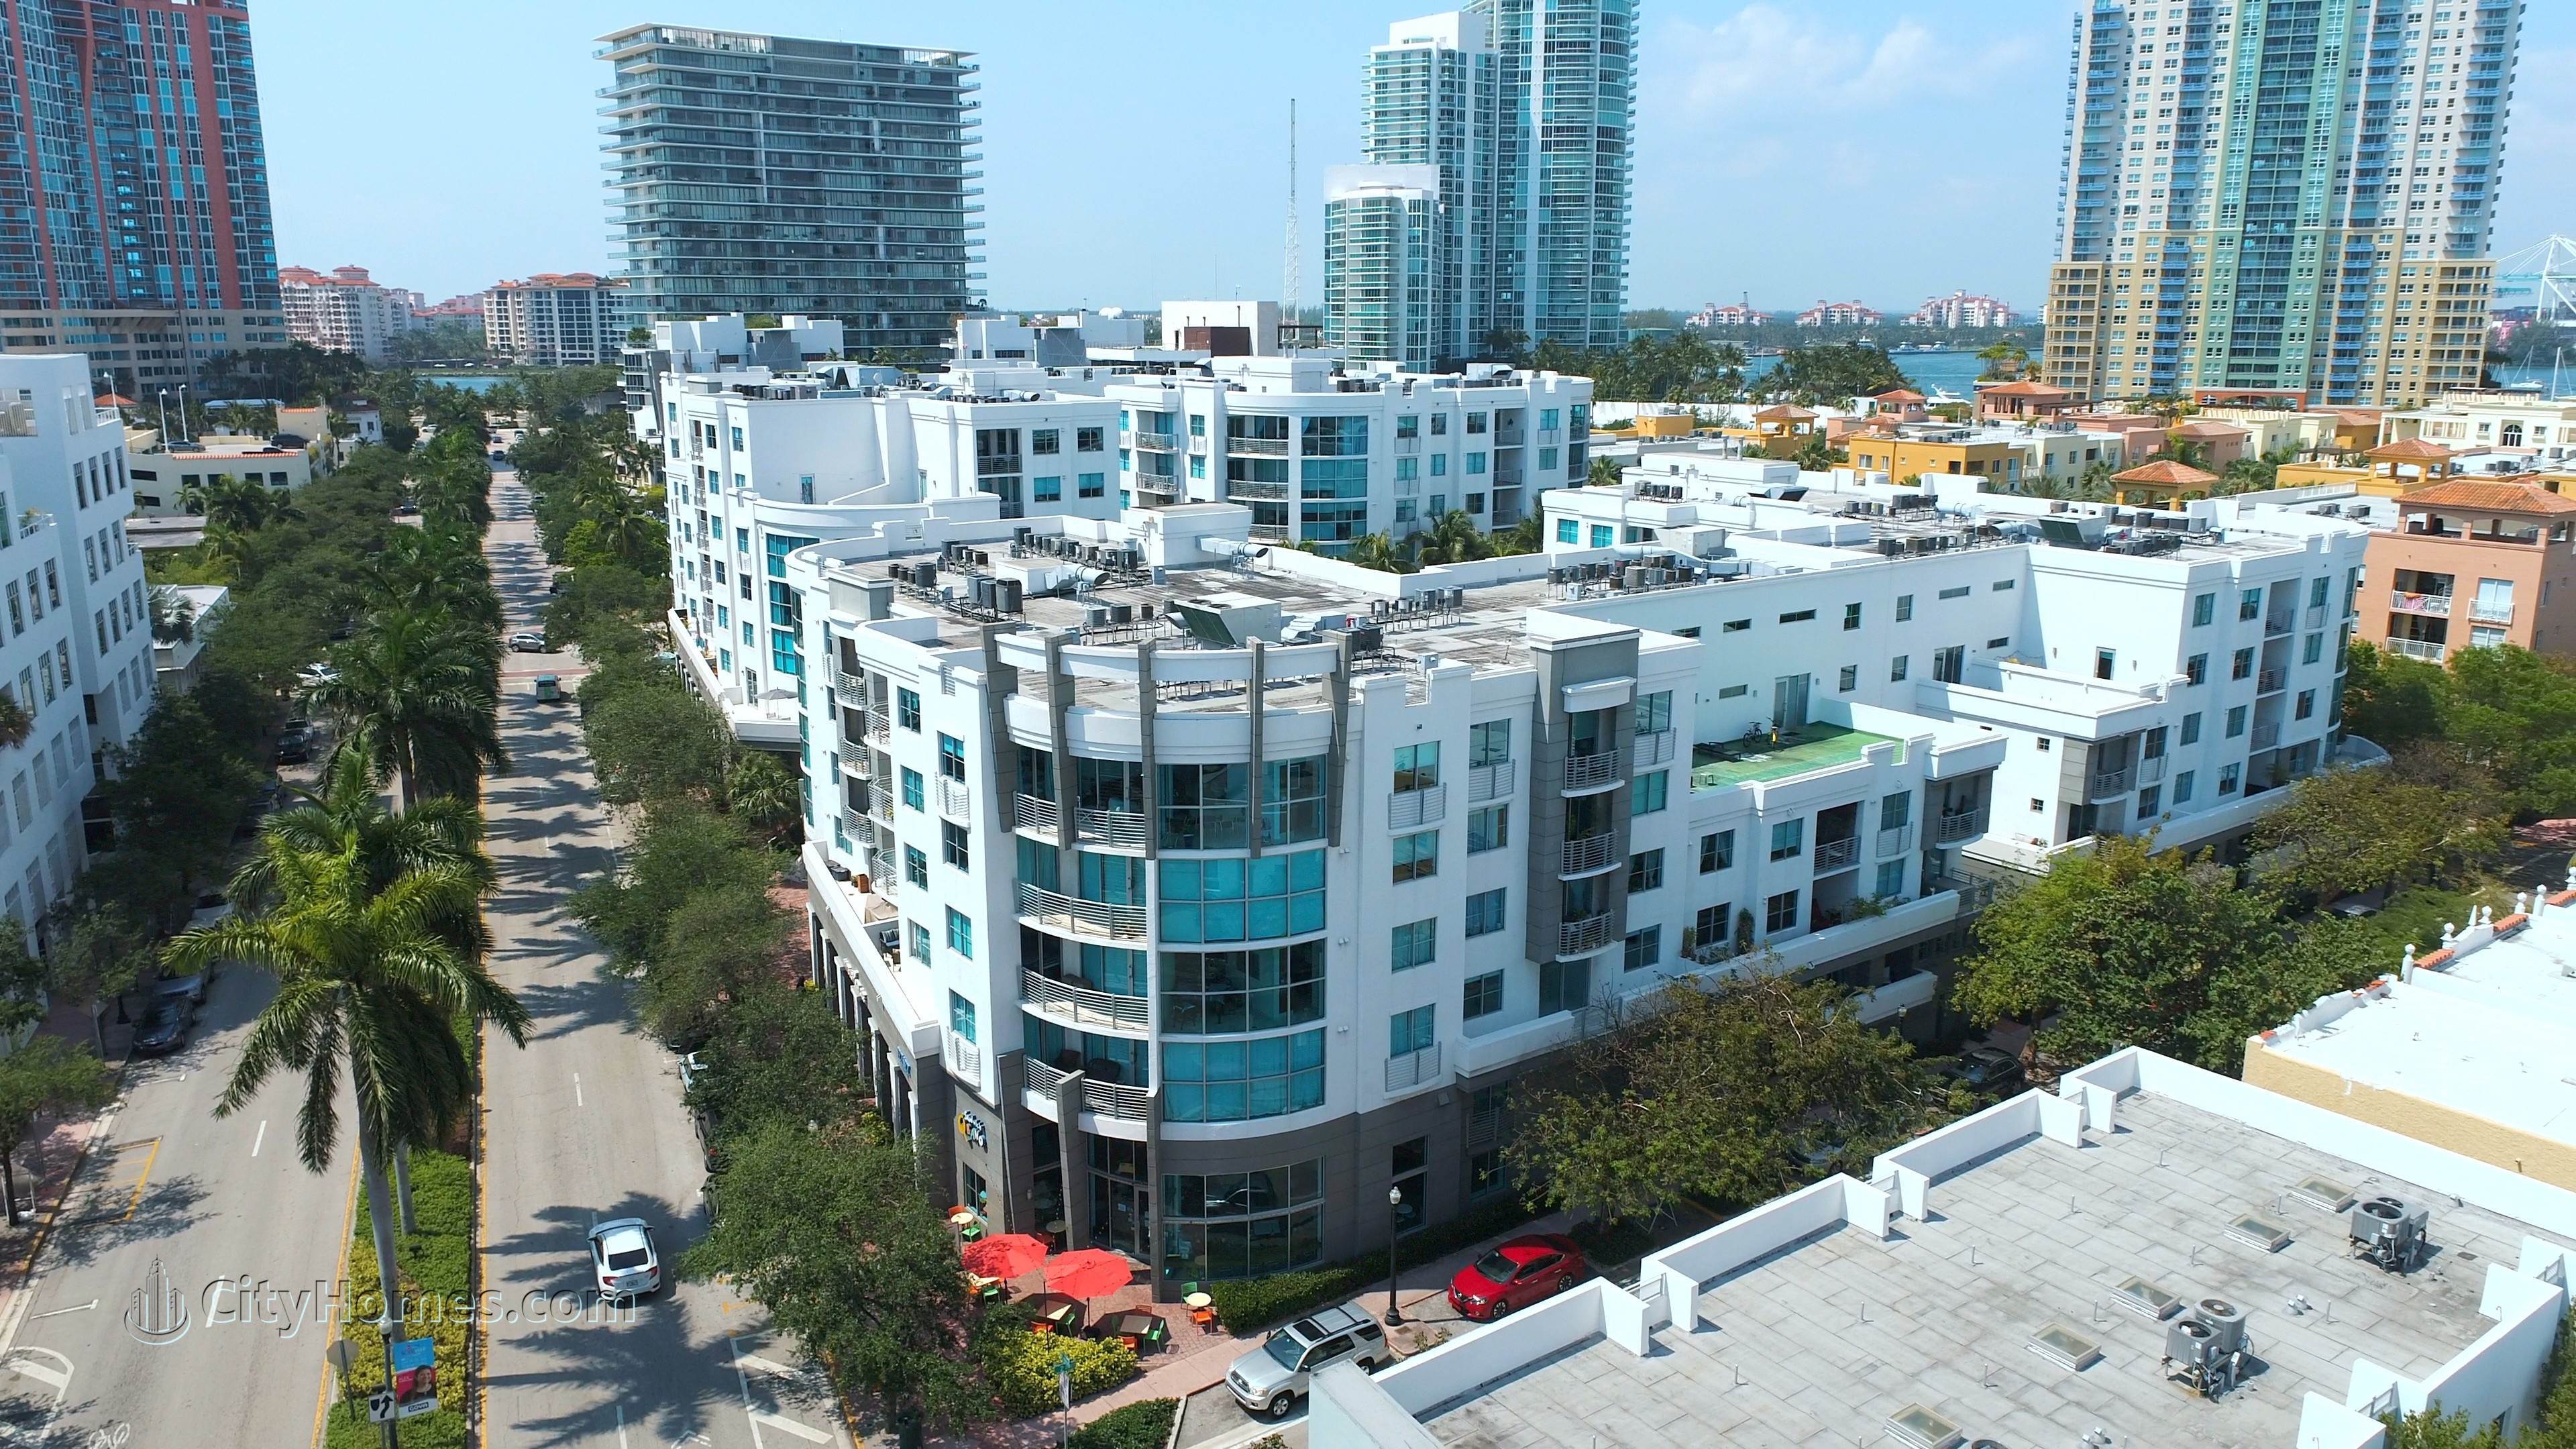 2. COSMOPOLITAN TOWERS edificio en 110 Washington Ave, South of Fifth, Miami Beach, FL 33139